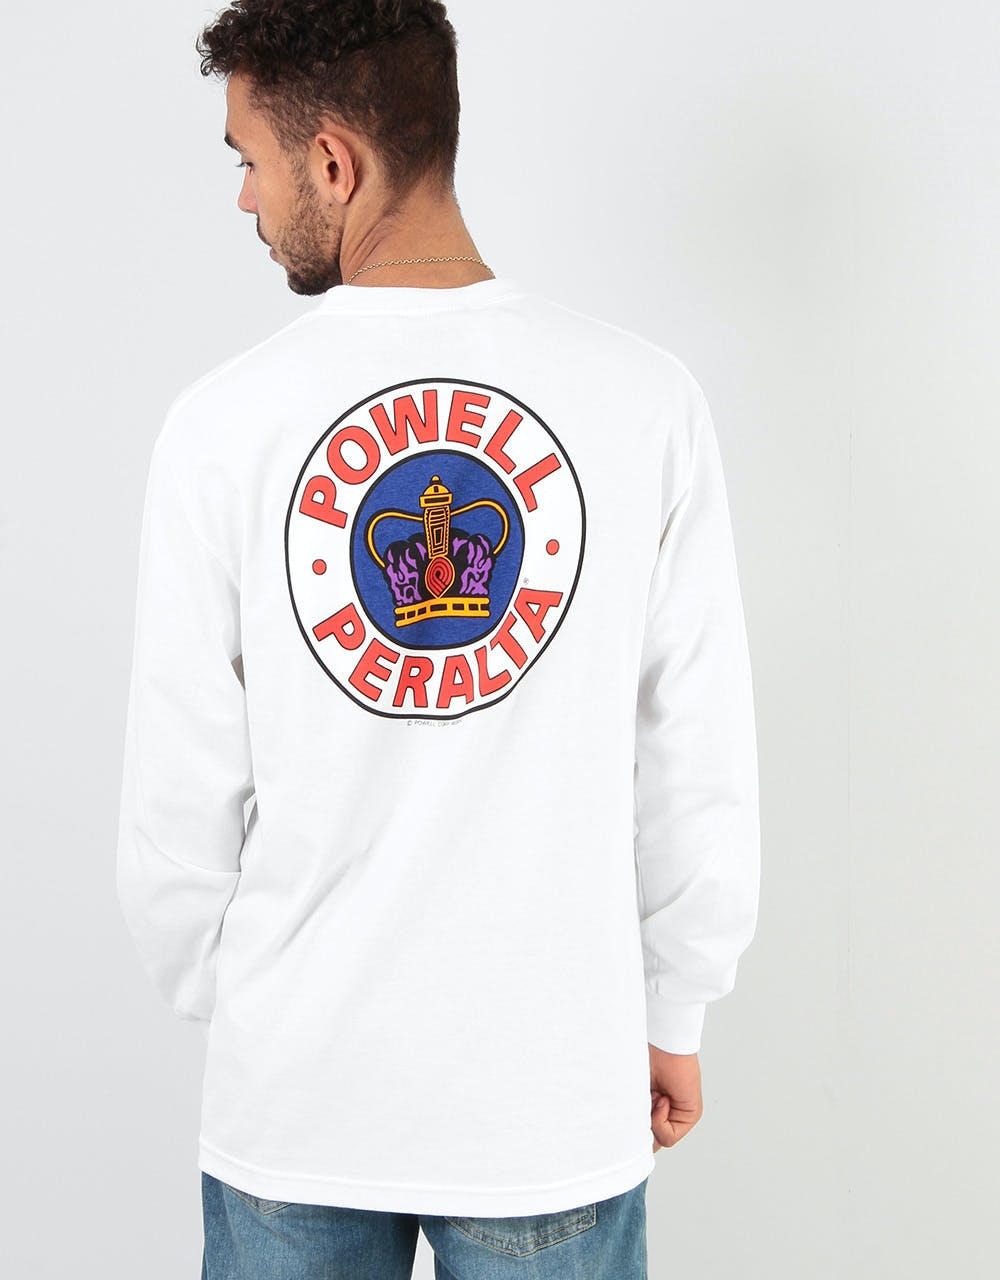 Powell Peralta Supreme L/S T-Shirt - White